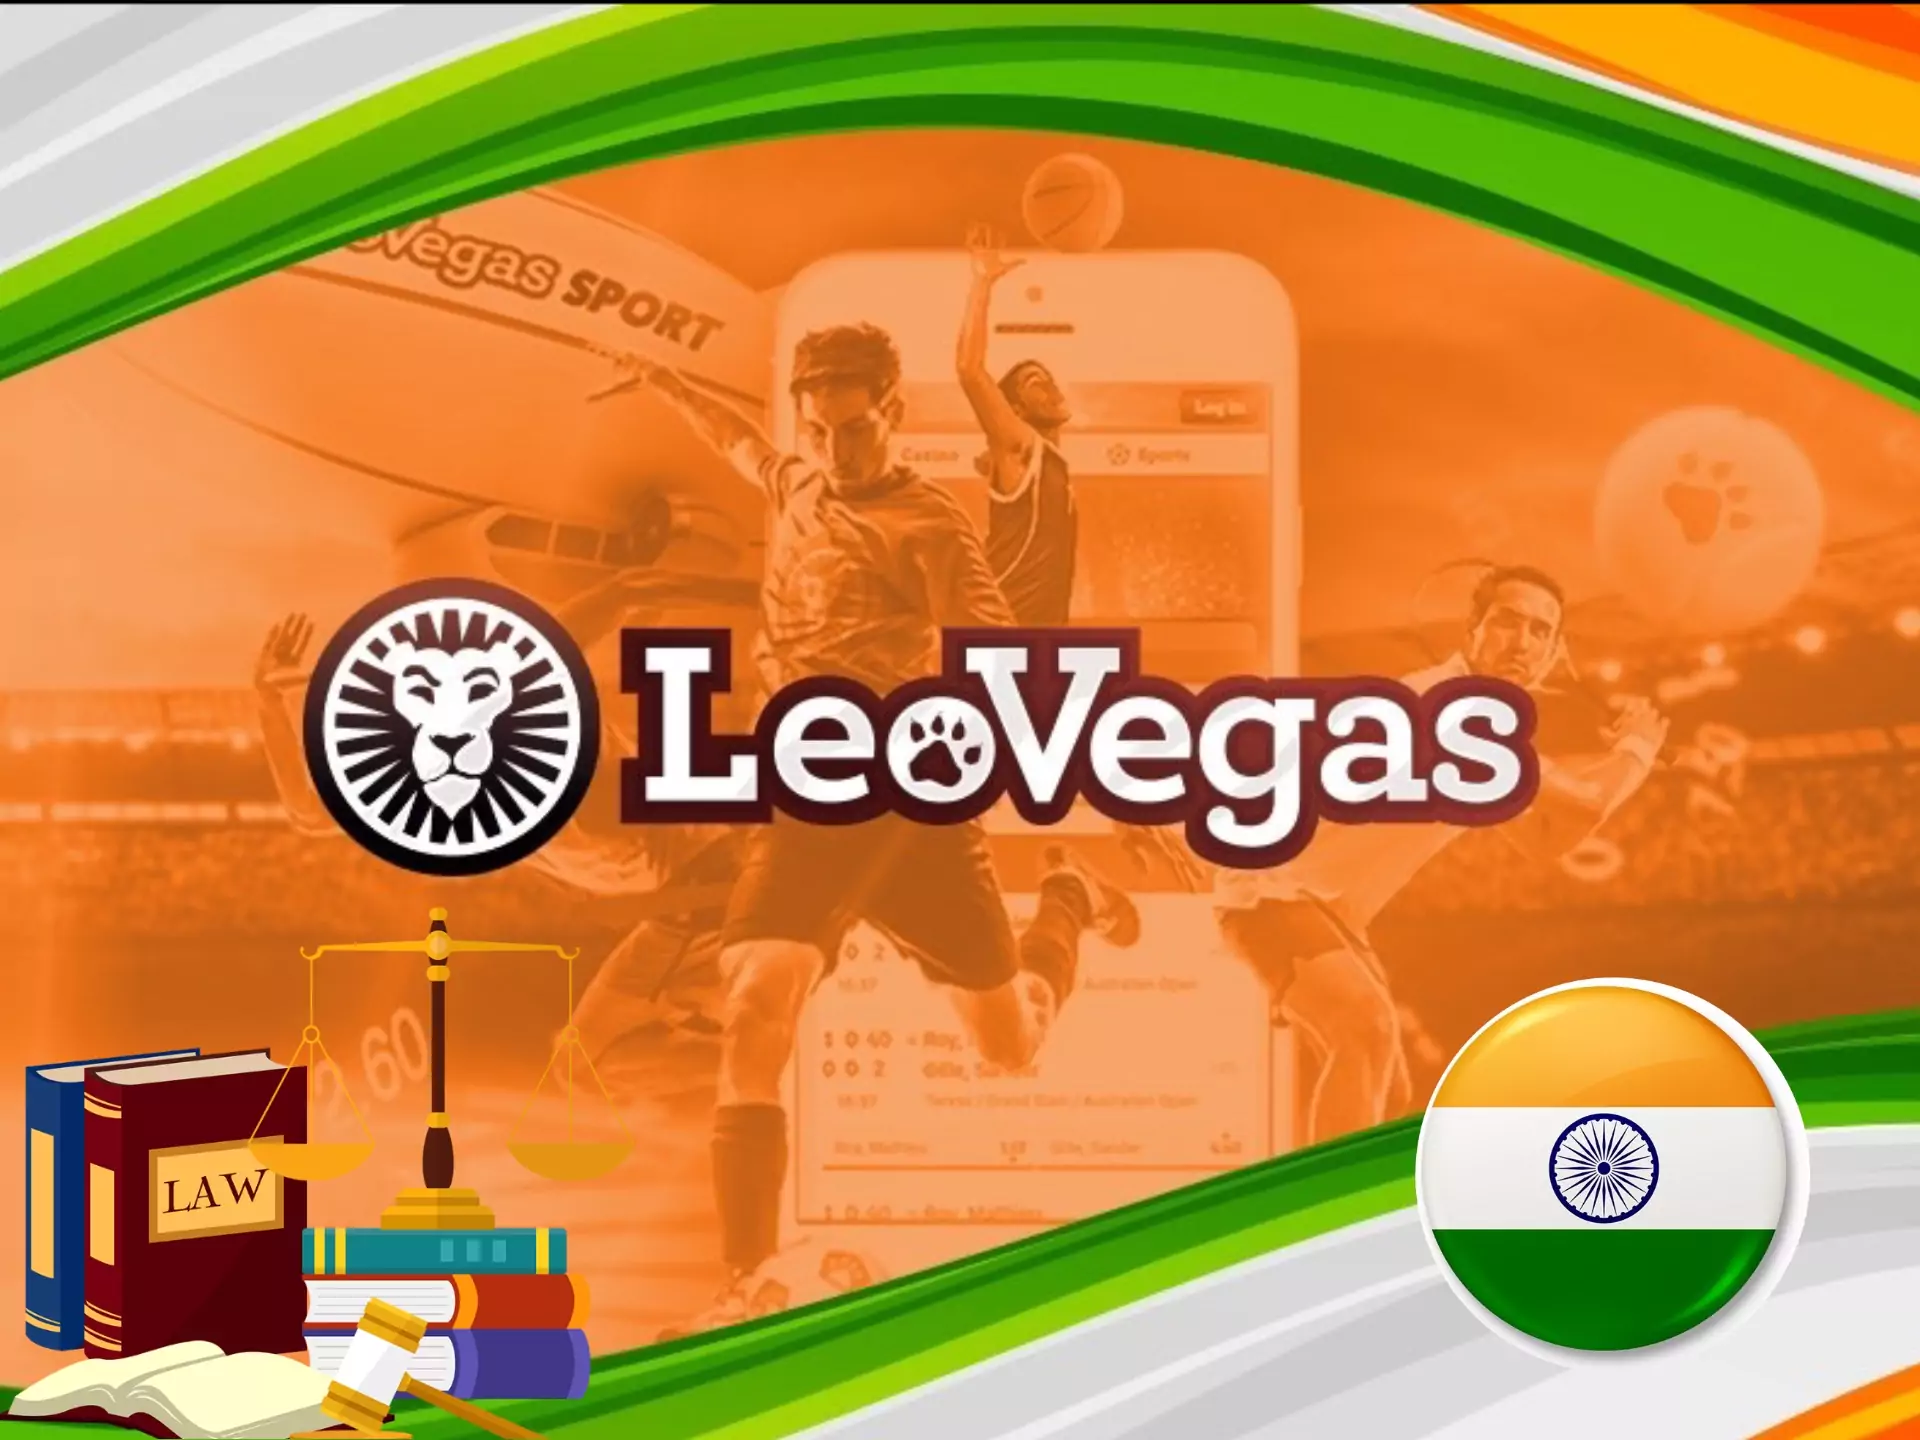 भारत में LeoVegas के माध्यम से सट्टेबाजी सुरक्षित और कानूनी है।